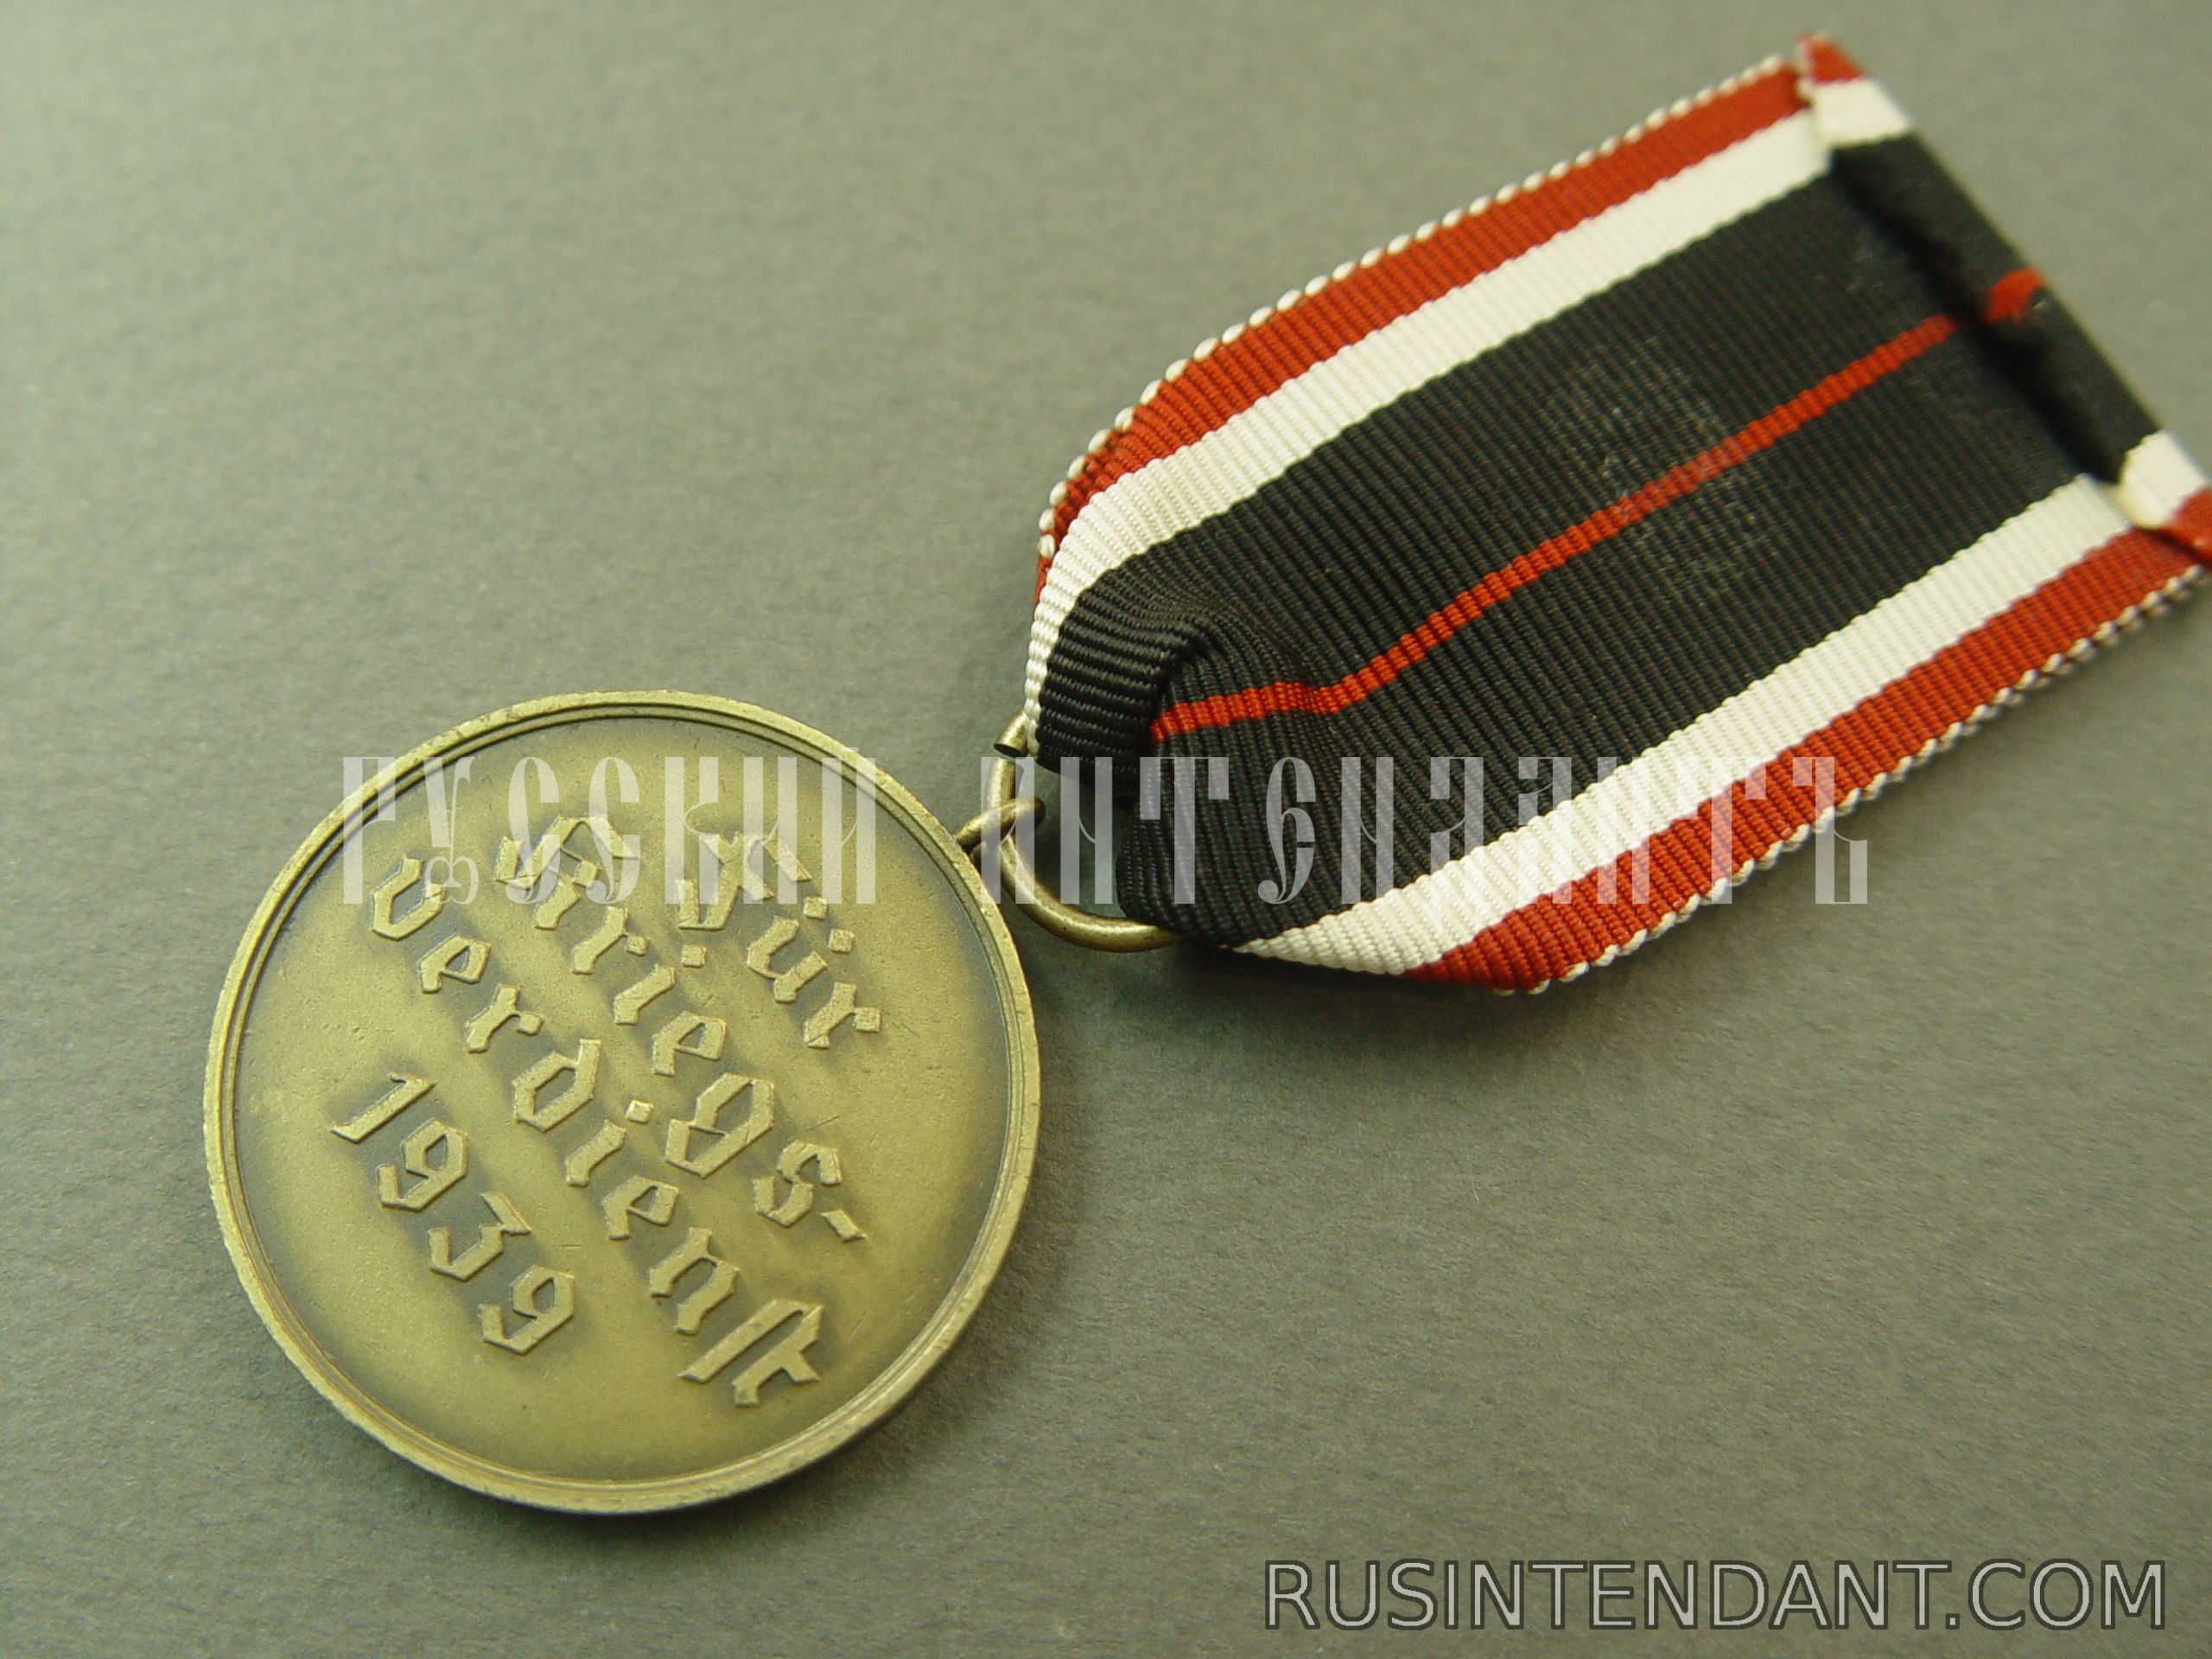 Фото 4: Медаль Креста военных заслуг 